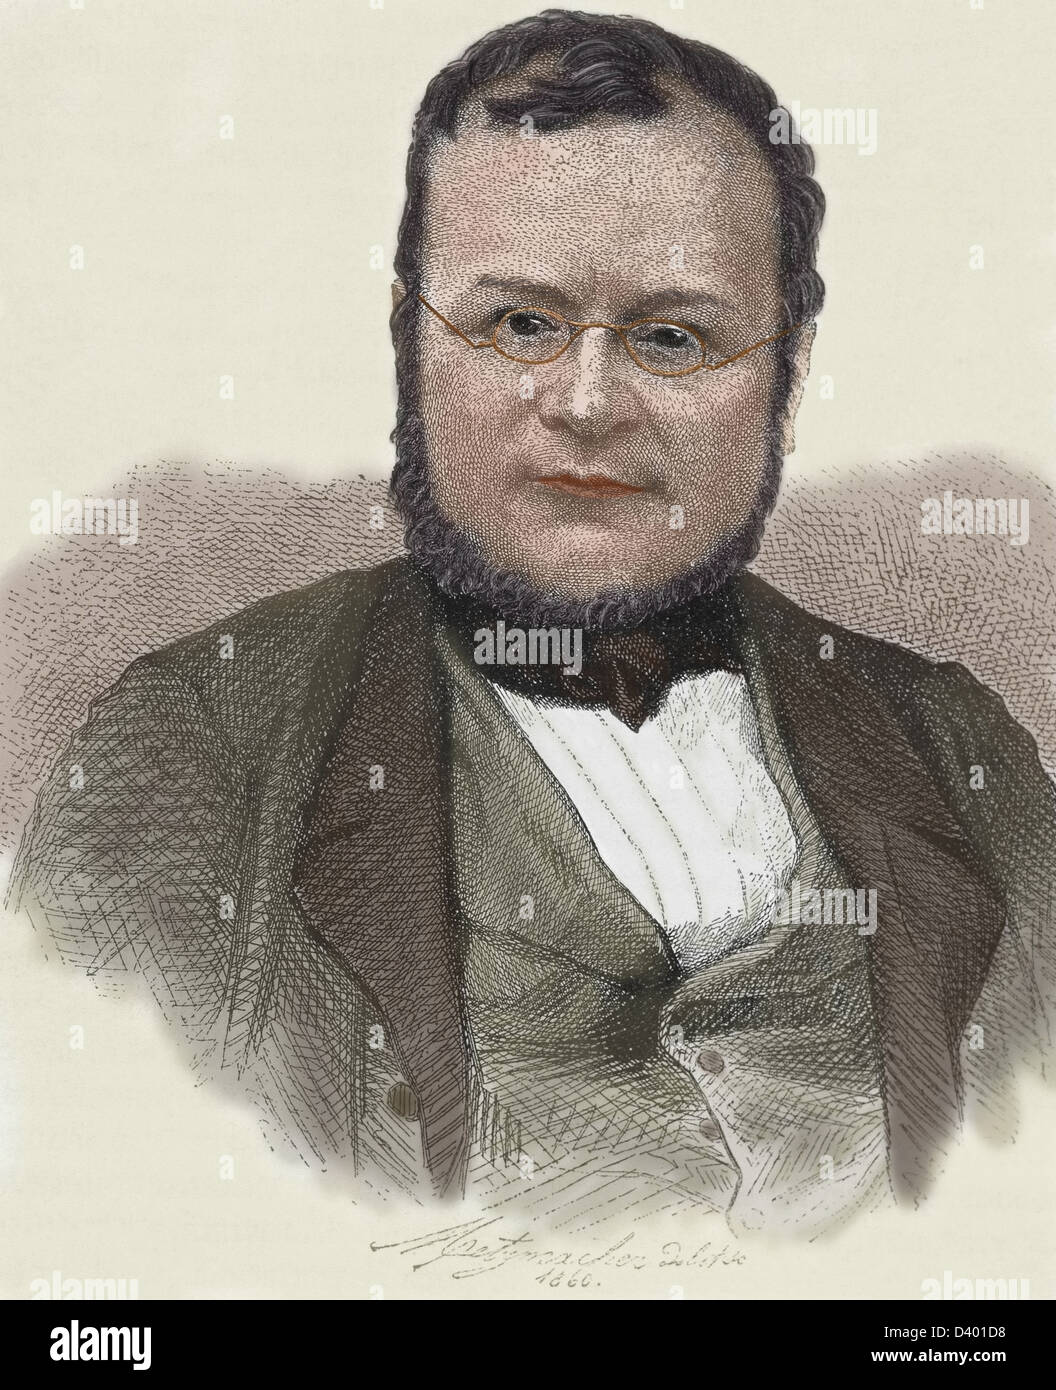 Cavour, Camillo Benso Graf von italienischen Staatsmann (Turin, 1810-1861). Gravur. Stockfoto